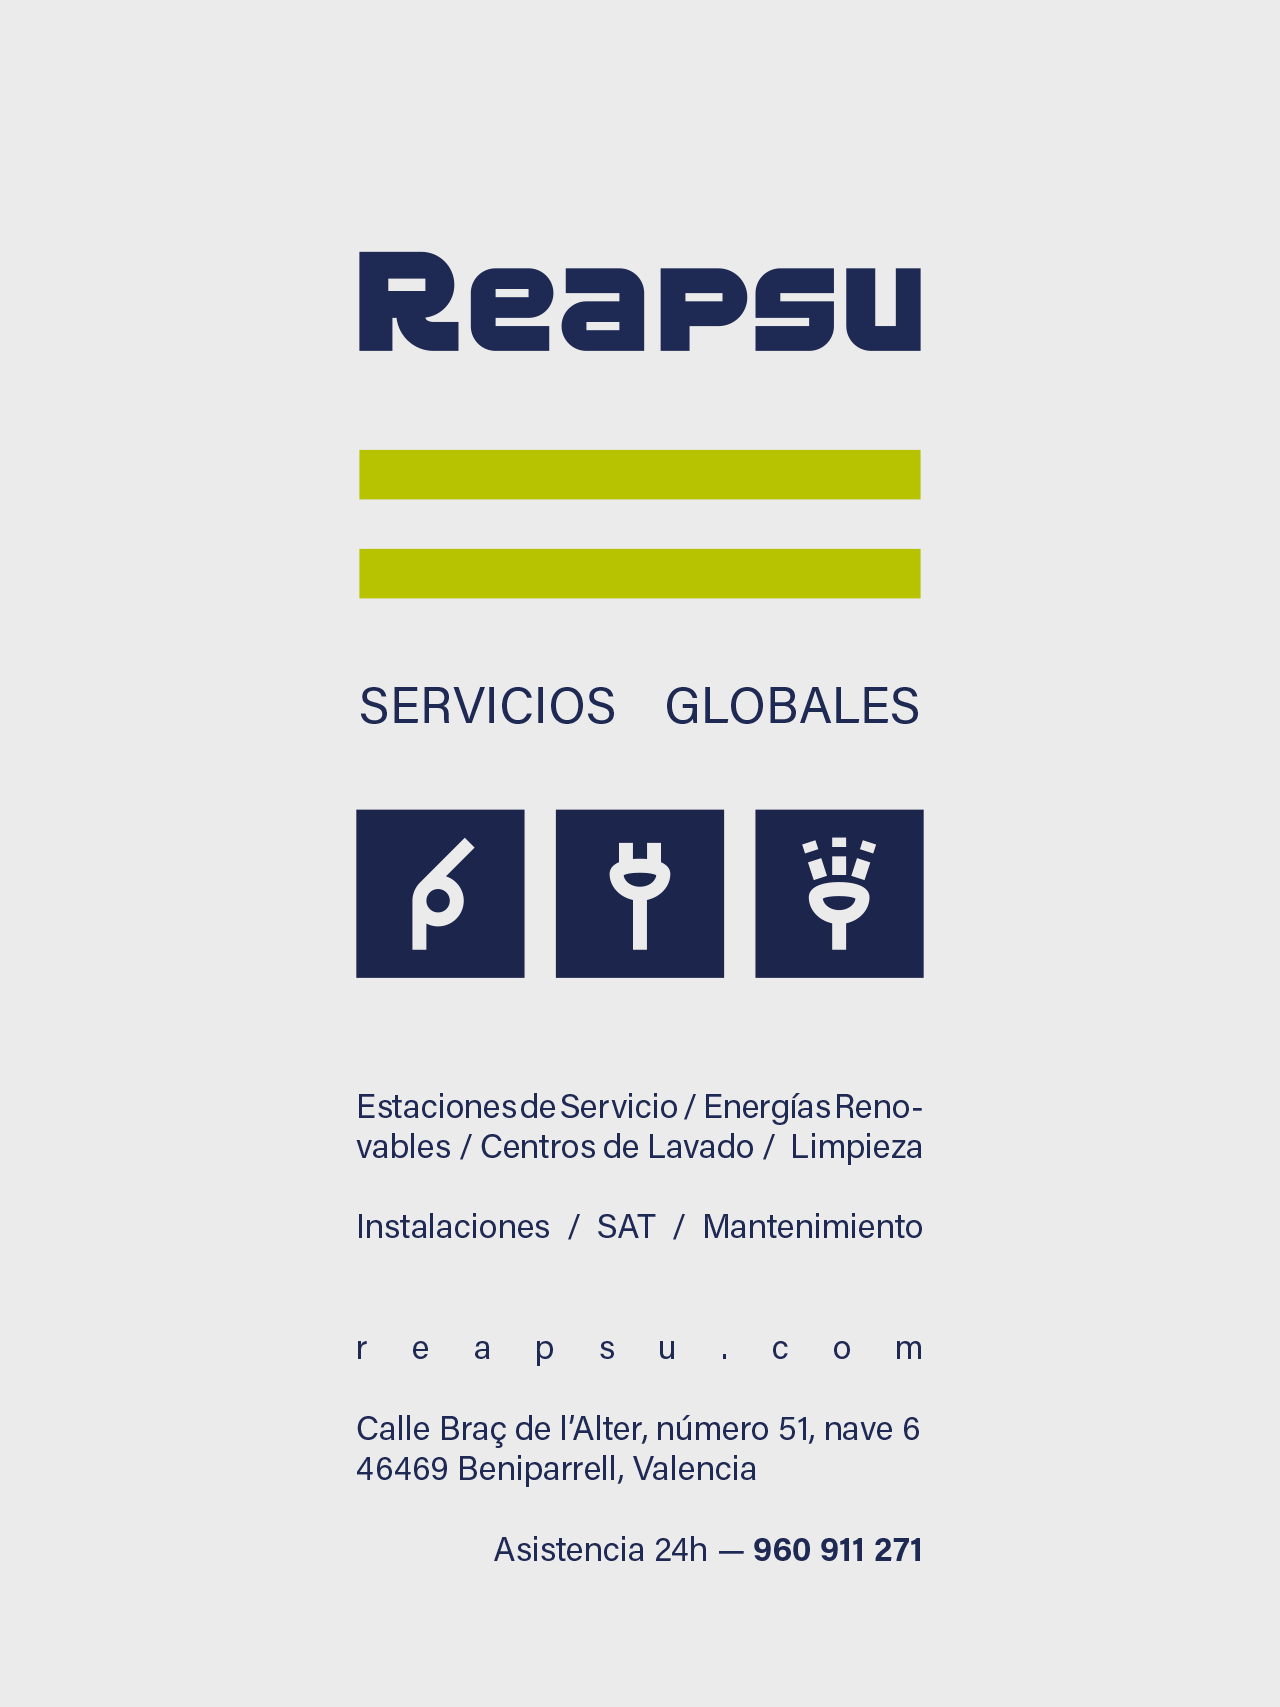 Diseño y comunicación promocional de los servicios Reapsu